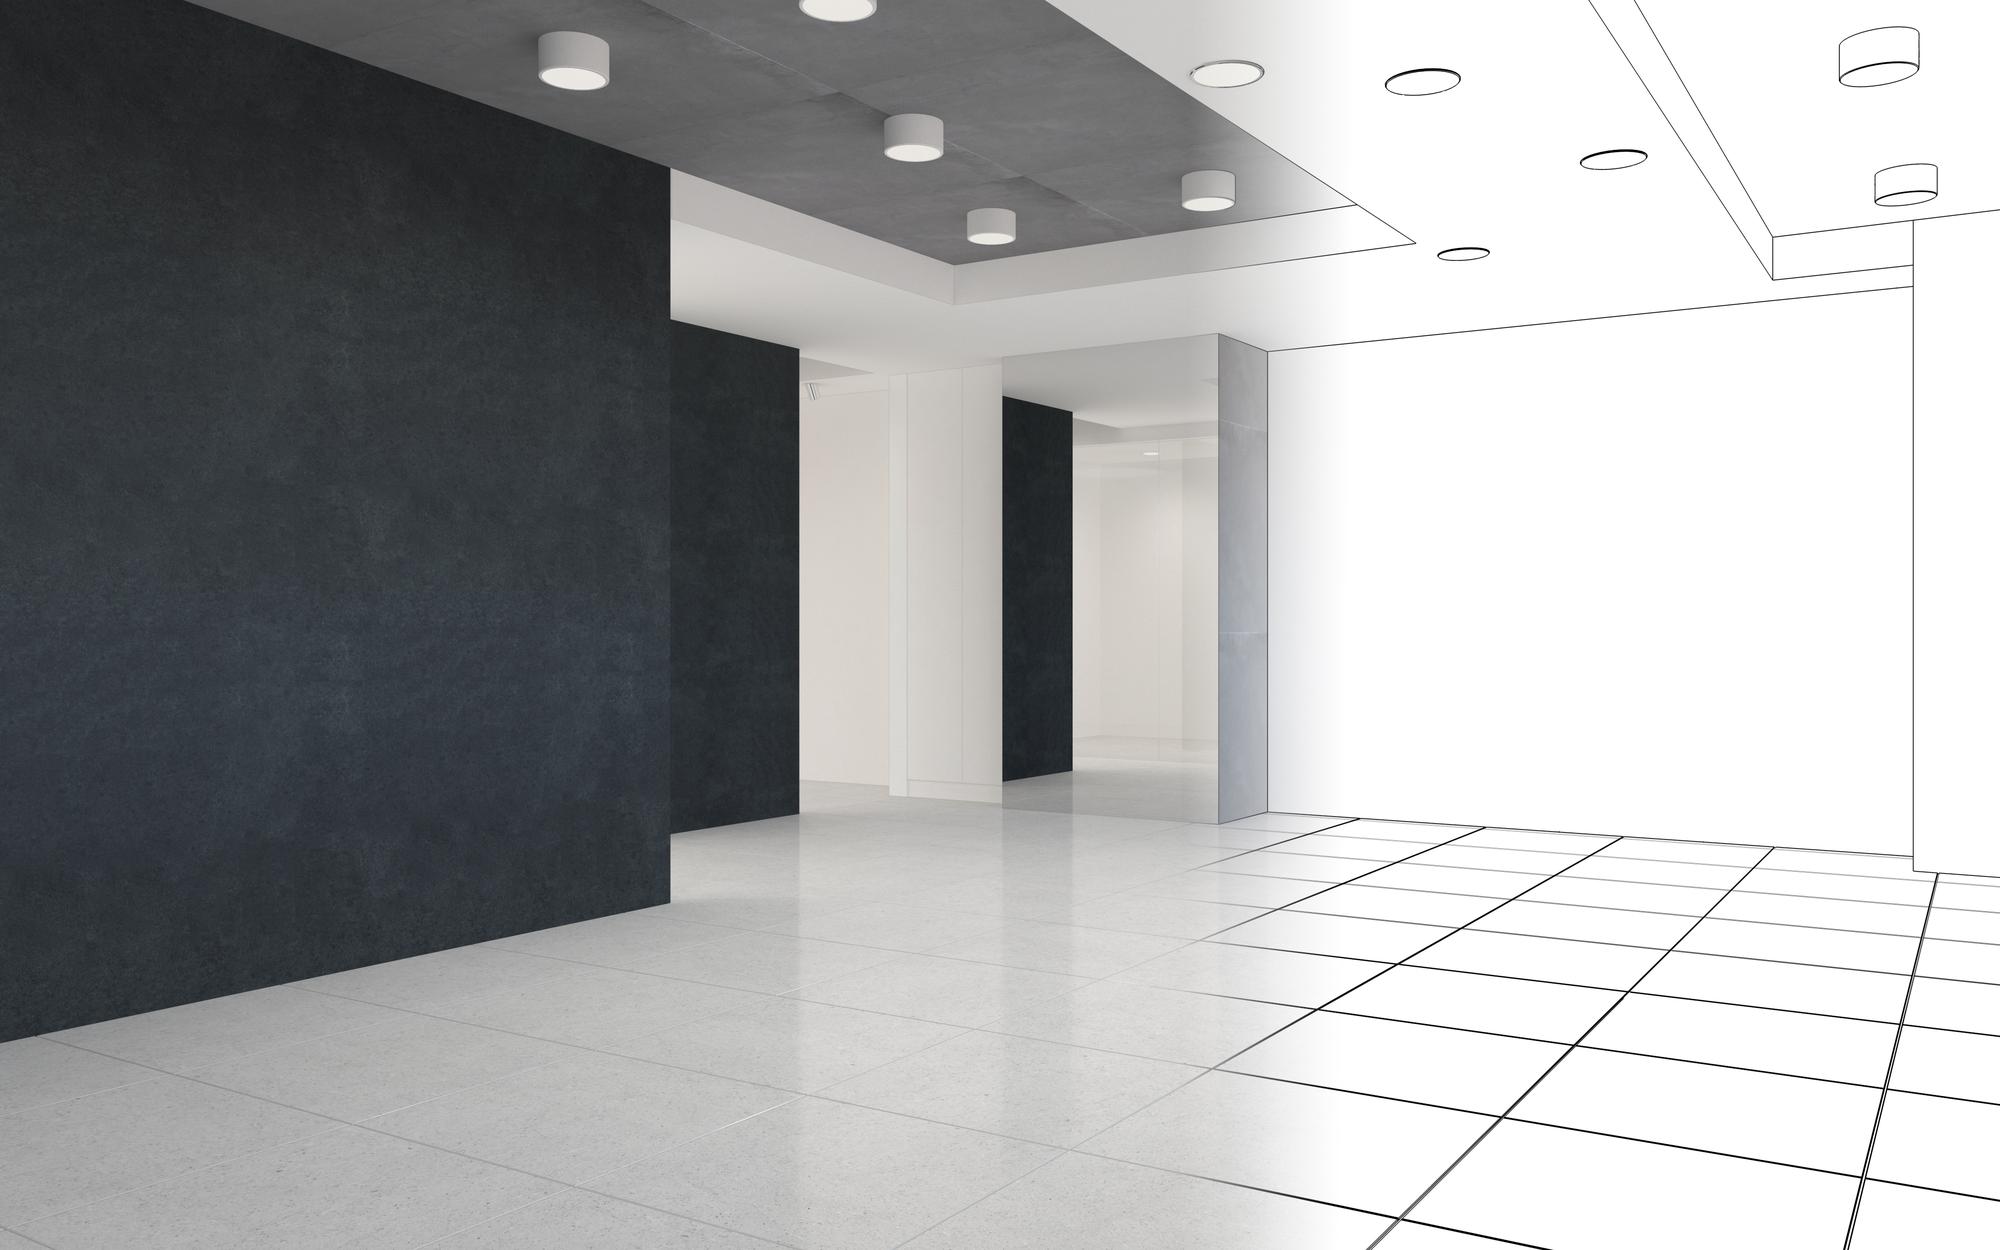 Visualisierung eines großen leeren Innenraums 3D-Illustration cg render